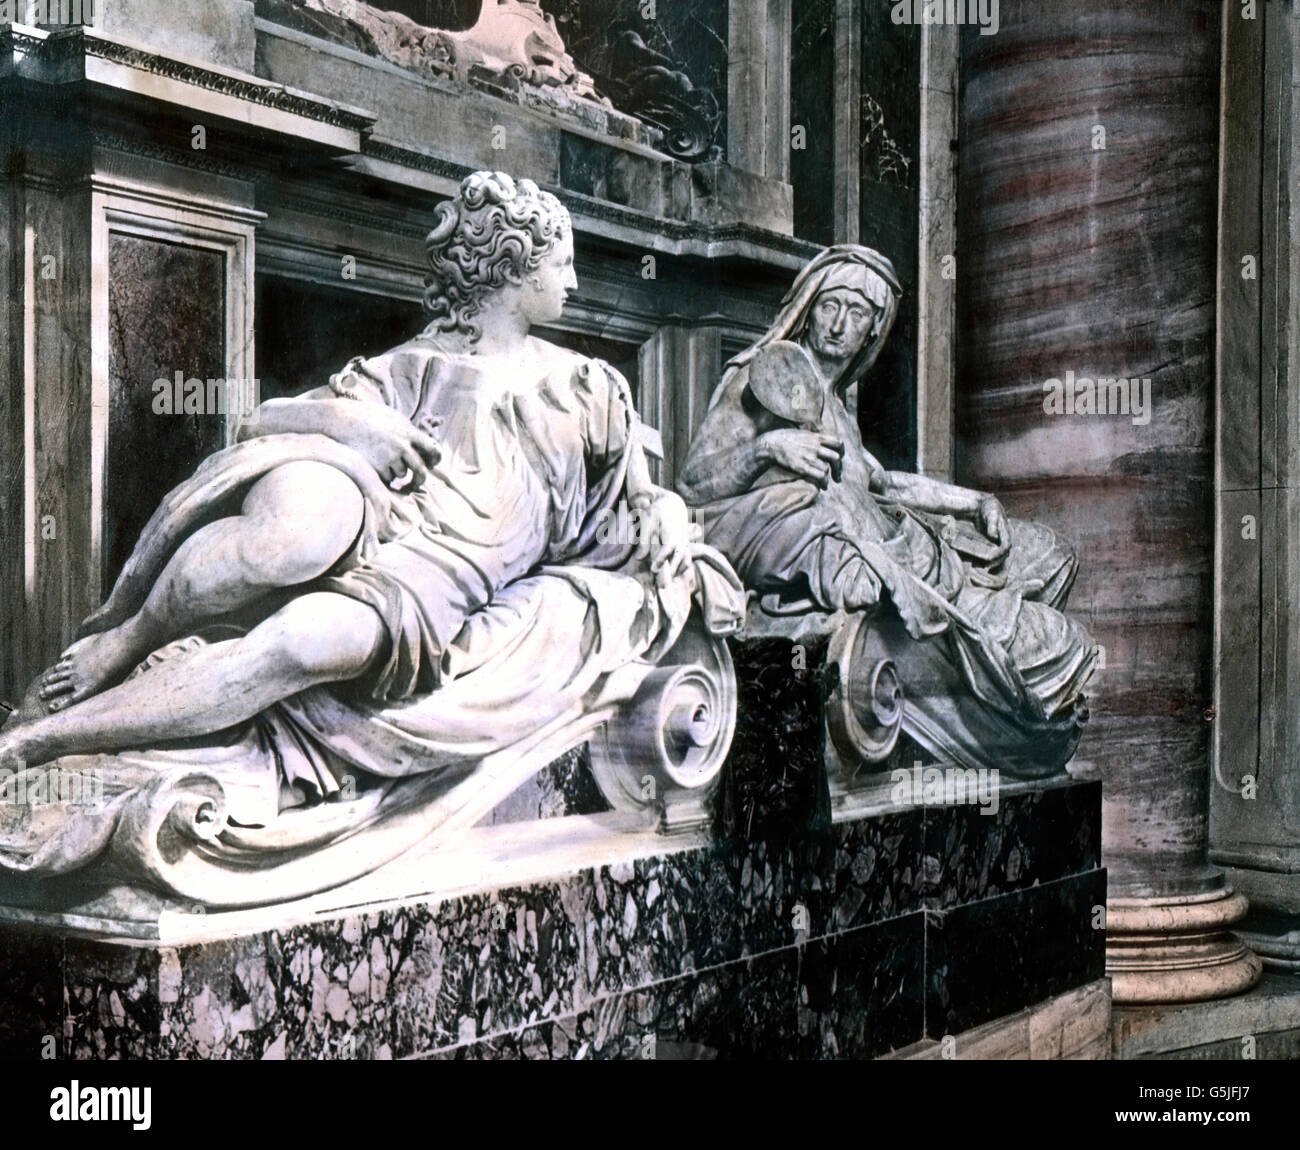 Das Grabmal von Papst Paolo III. im Petersdom in Rom, Italien 1920er Jahre. Tomba di papa Paolo III presso la cattedrale di San Pietro a Roma, Italia, 1920s. Foto Stock